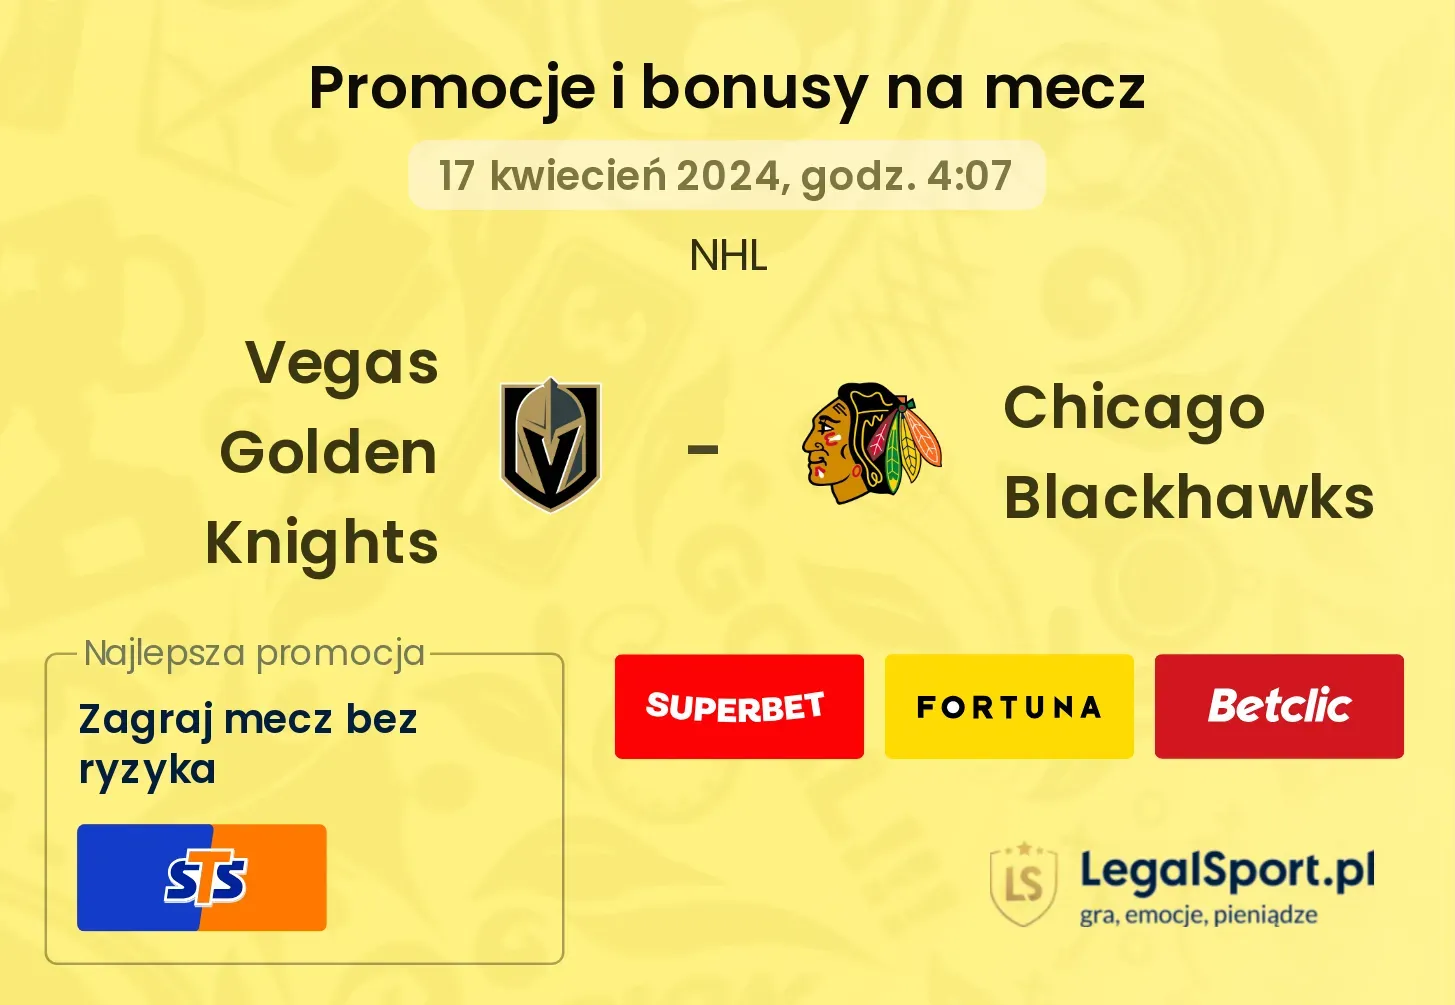 Vegas Golden Knights - Chicago Blackhawks promocje bonusy na mecz